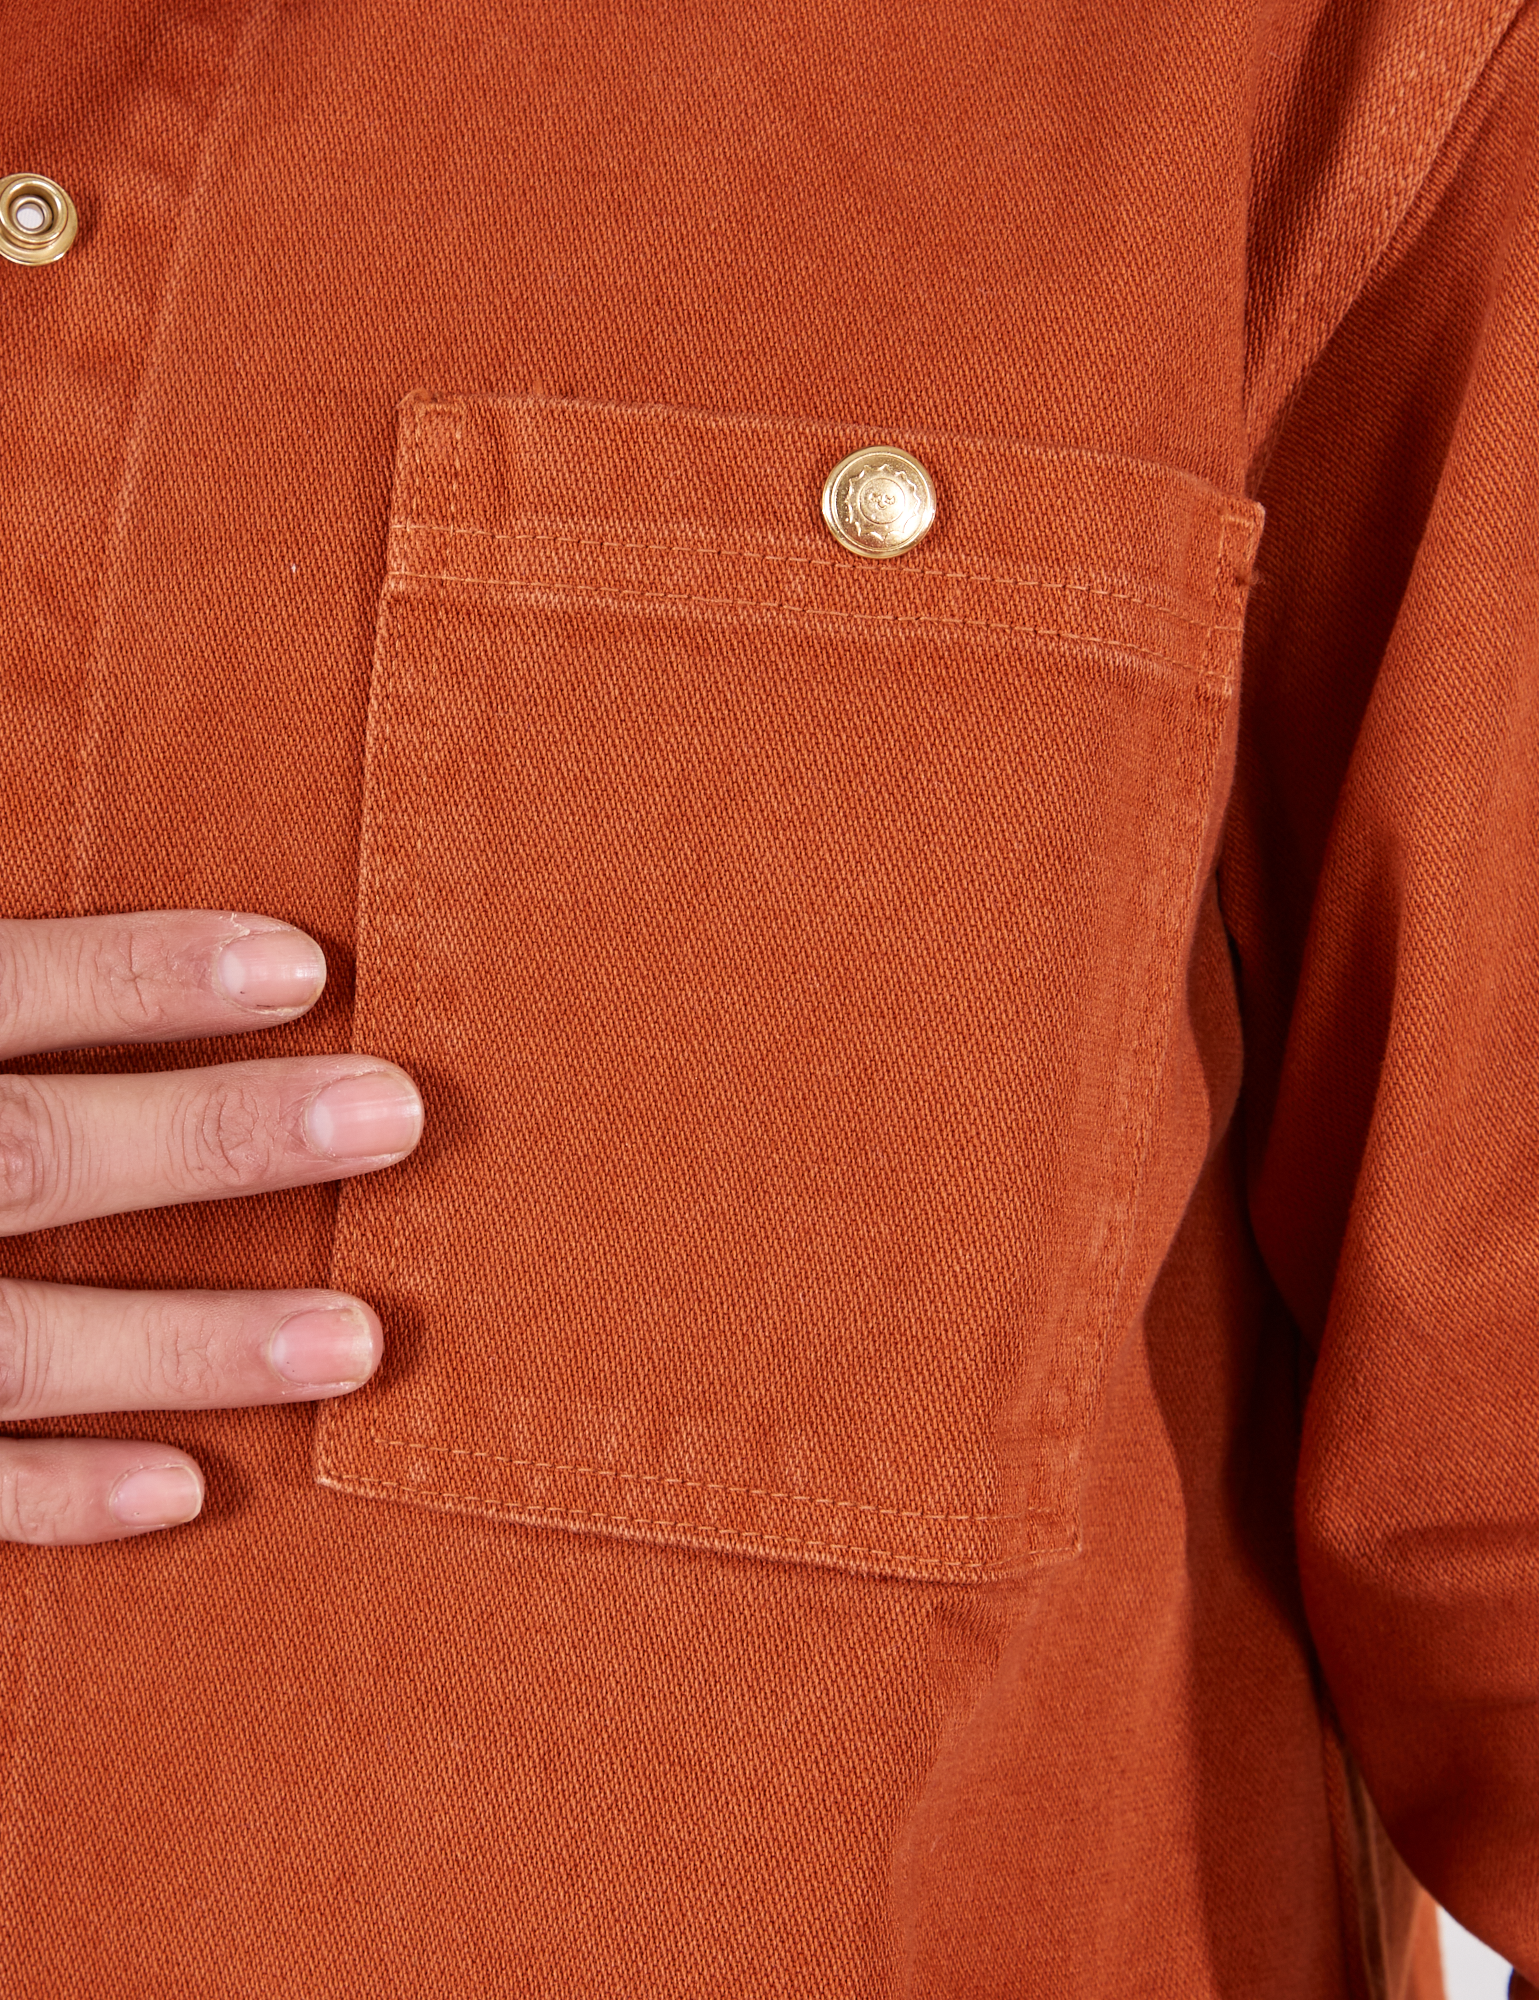 Denim Work Jacket in Burnt Terracotta front pocket close up